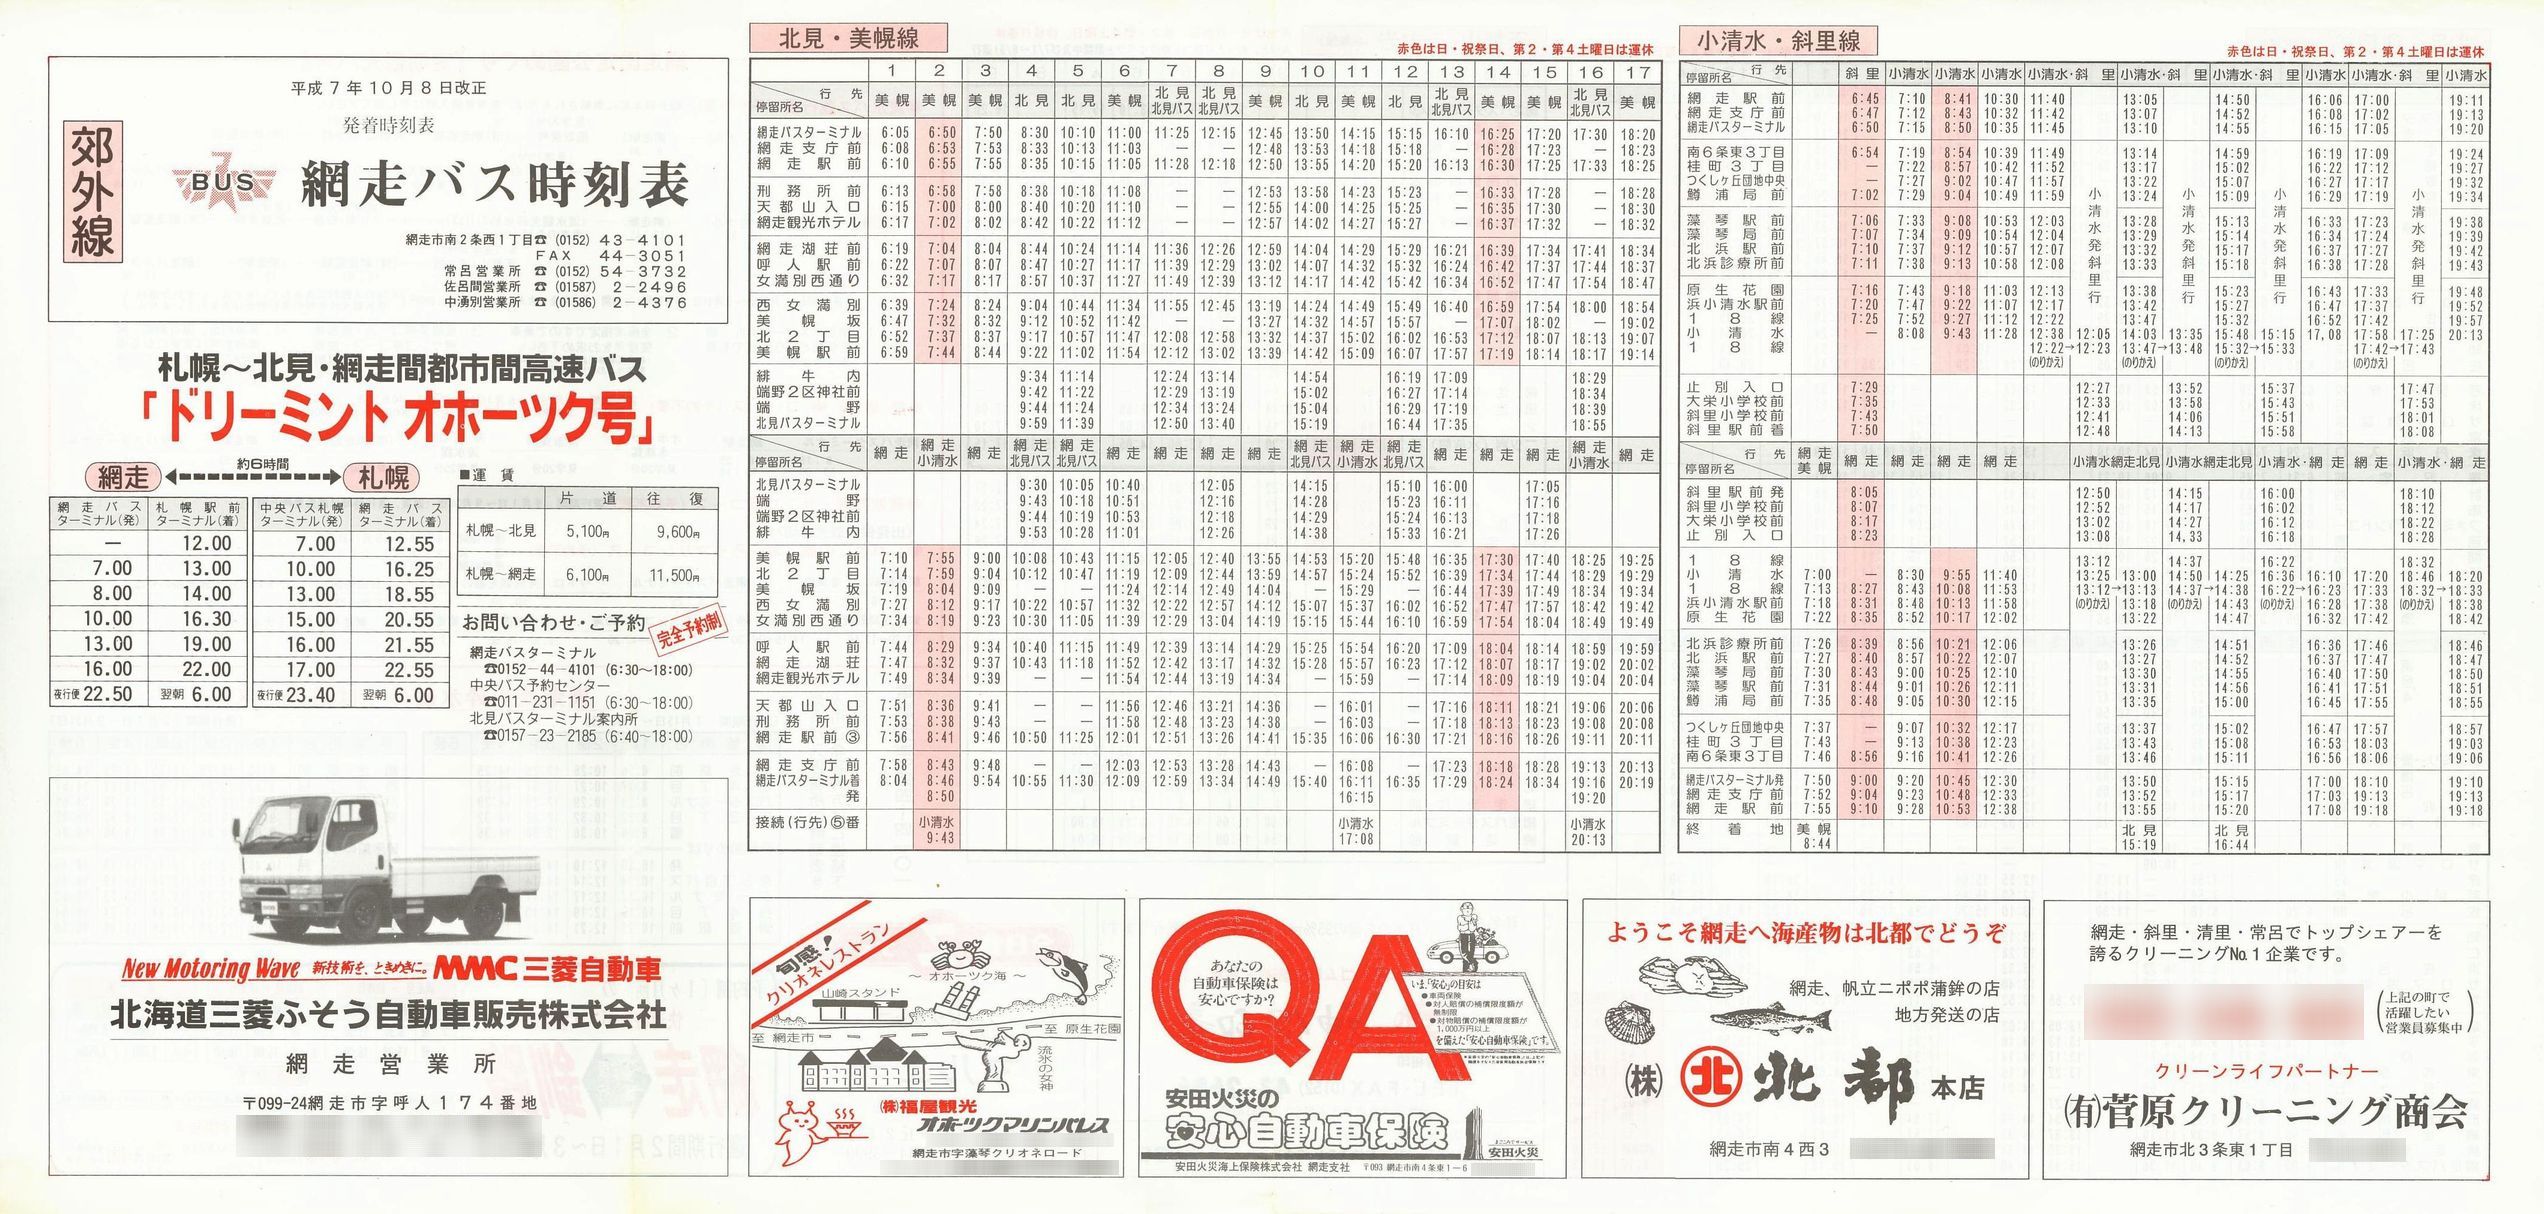 1995-10-08改正_網走バス_郊外線時刻表表面